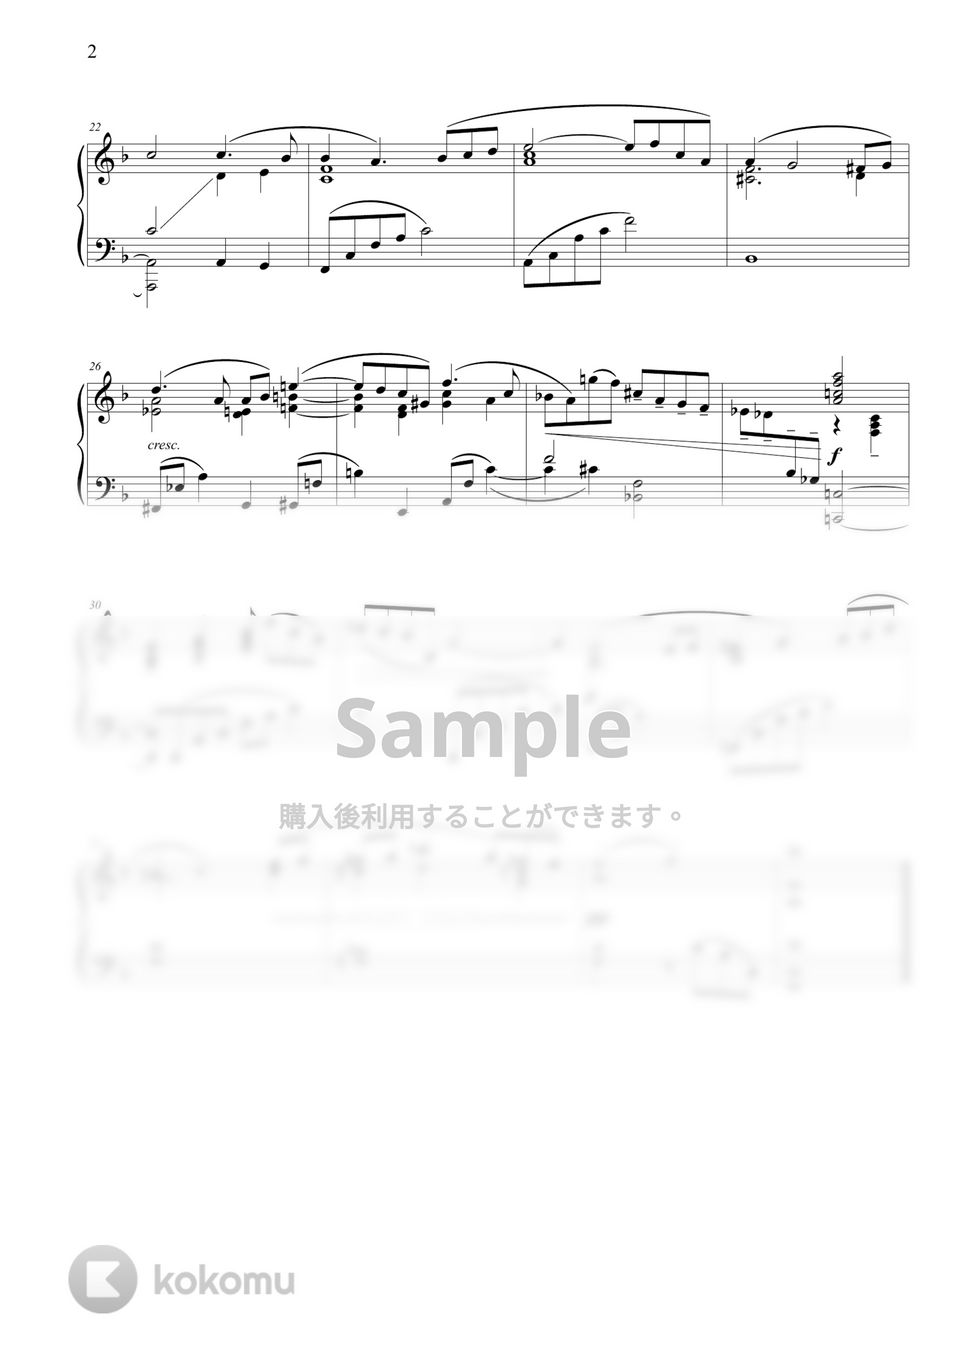 グスタフ・マーラー(Gustav Mahler) - 交響曲第５番第４楽章 ‘アダージェット(Adagietto)’ (中級バージョン) by THIS IS PIANO